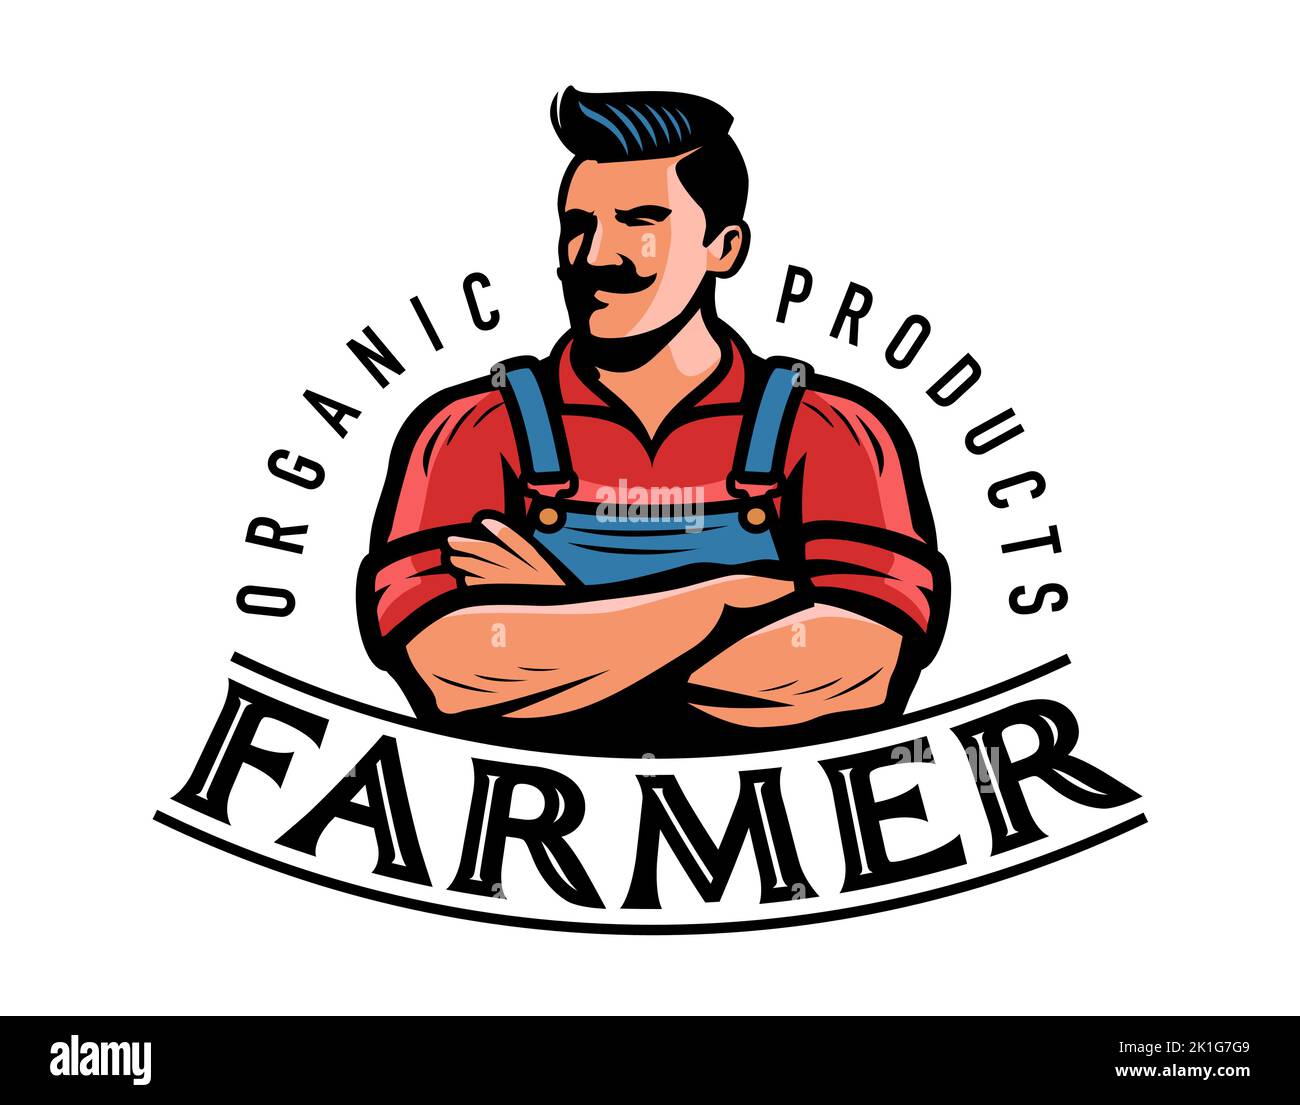 Logotipo o emblema del agricultor. Granja, agricultura, insignia agrícola. Ilustración vectorial del símbolo de alimentos naturales orgánicos Ilustración del Vector